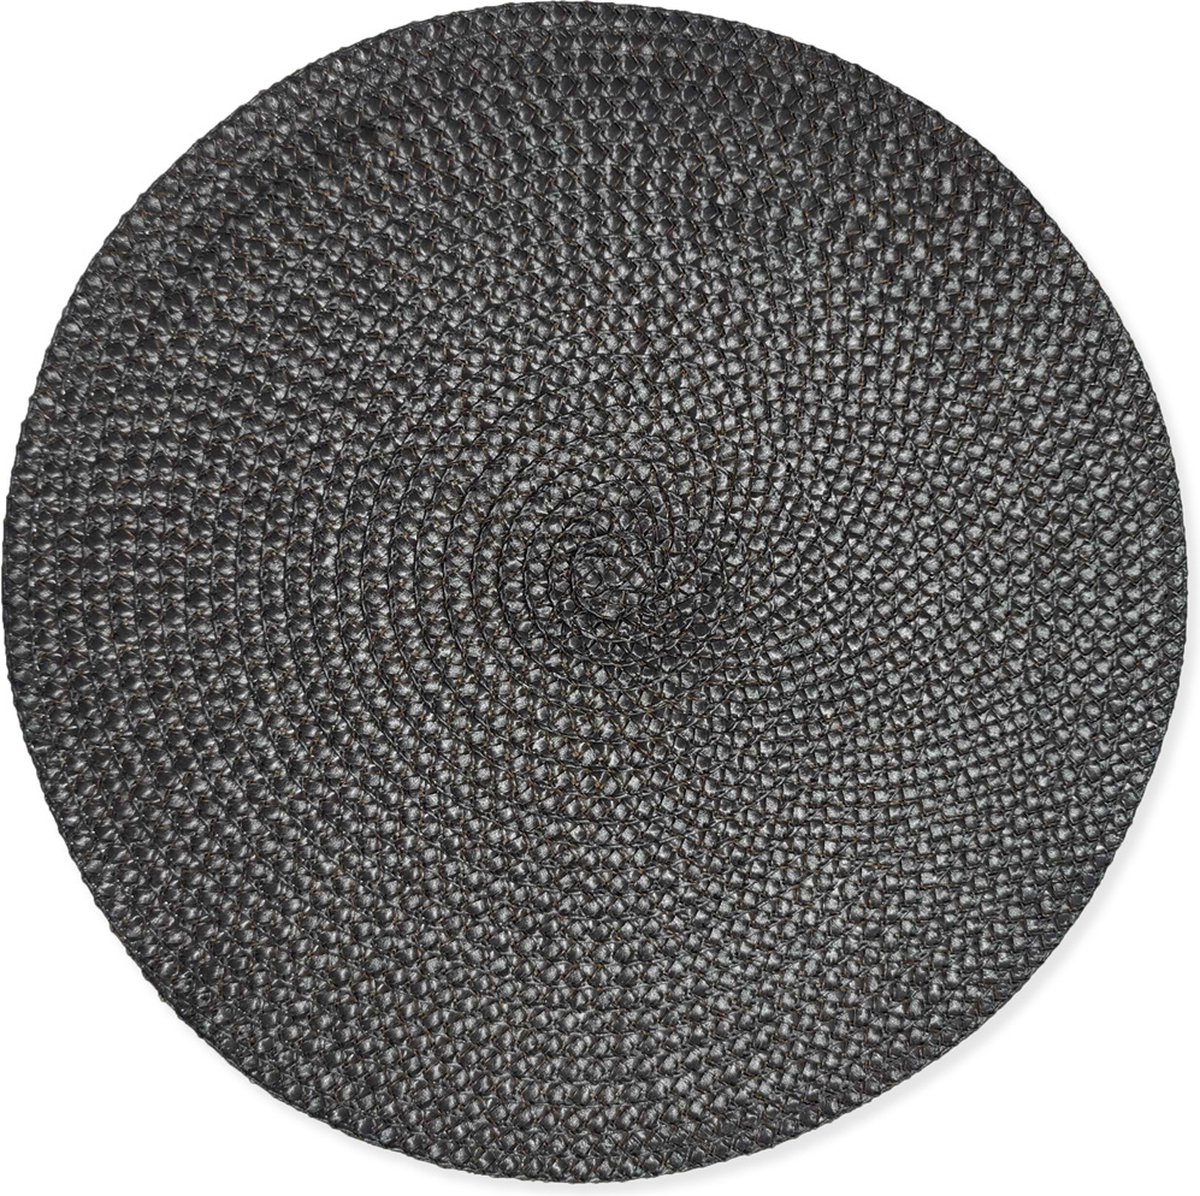 4x Ronde Placemats- Urban Black - Zwart - Decoratie - 38cm rond